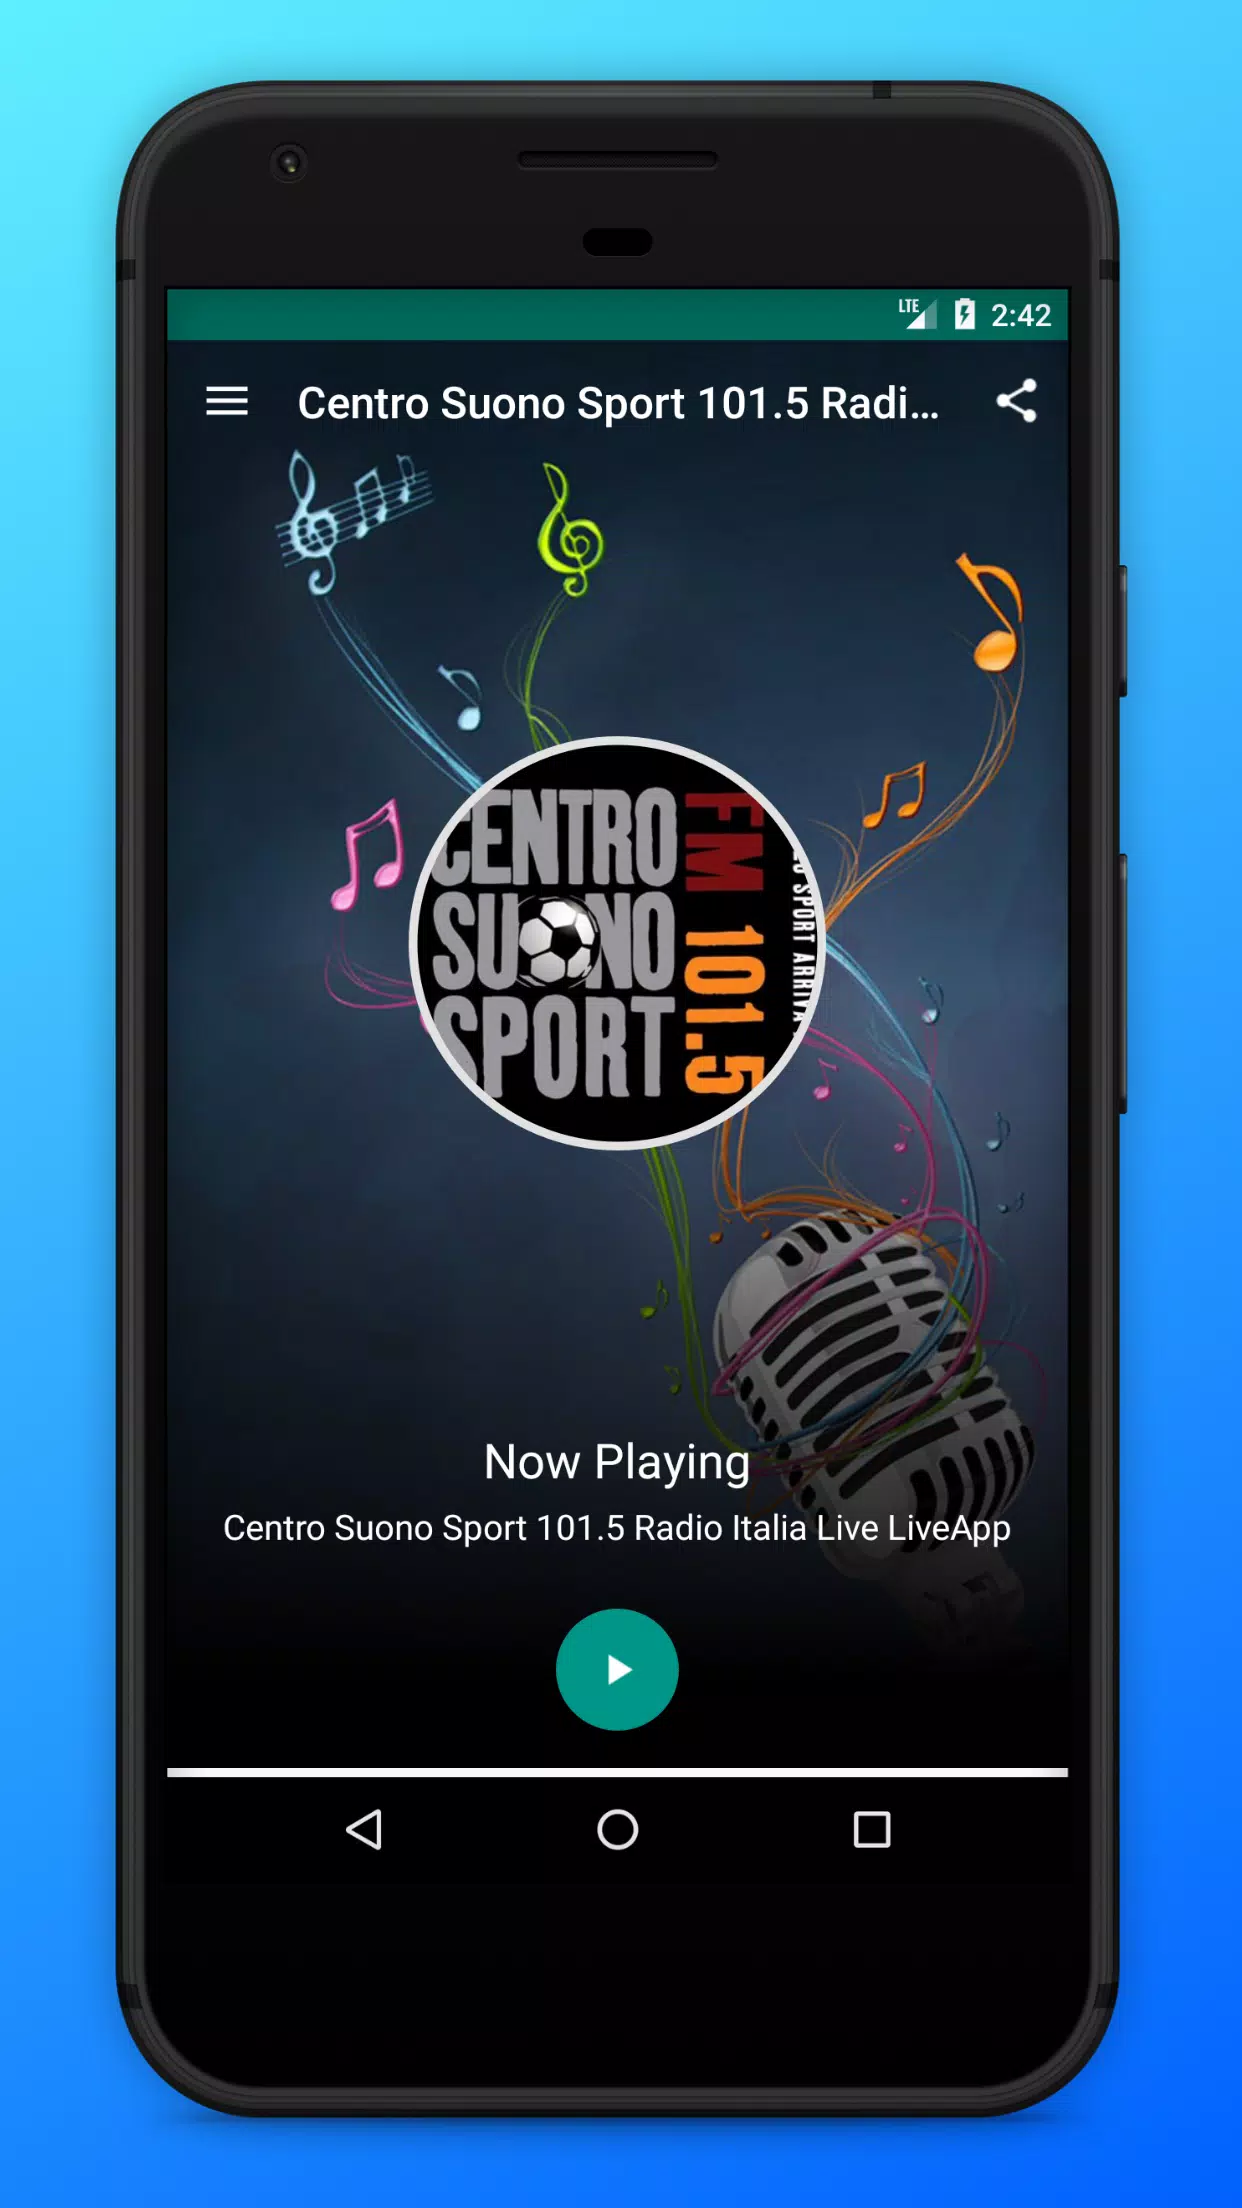 下载Centro Suono Sport 101.5 Radio Italia Live App的安卓版本